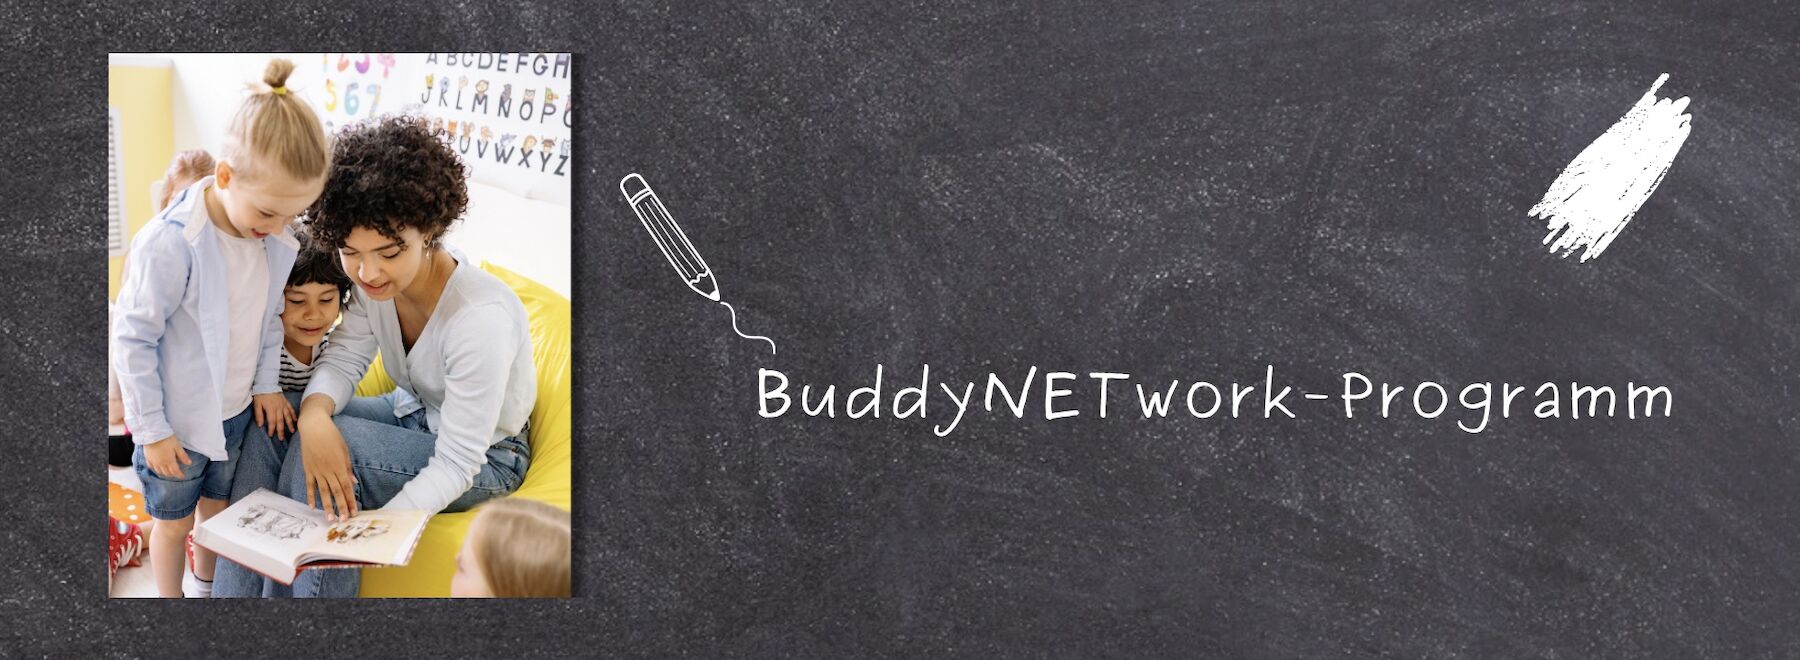 Lust darauf, einmal Lehrer*in zu sein? Dann komm zum BuddyNETwork-Programm!